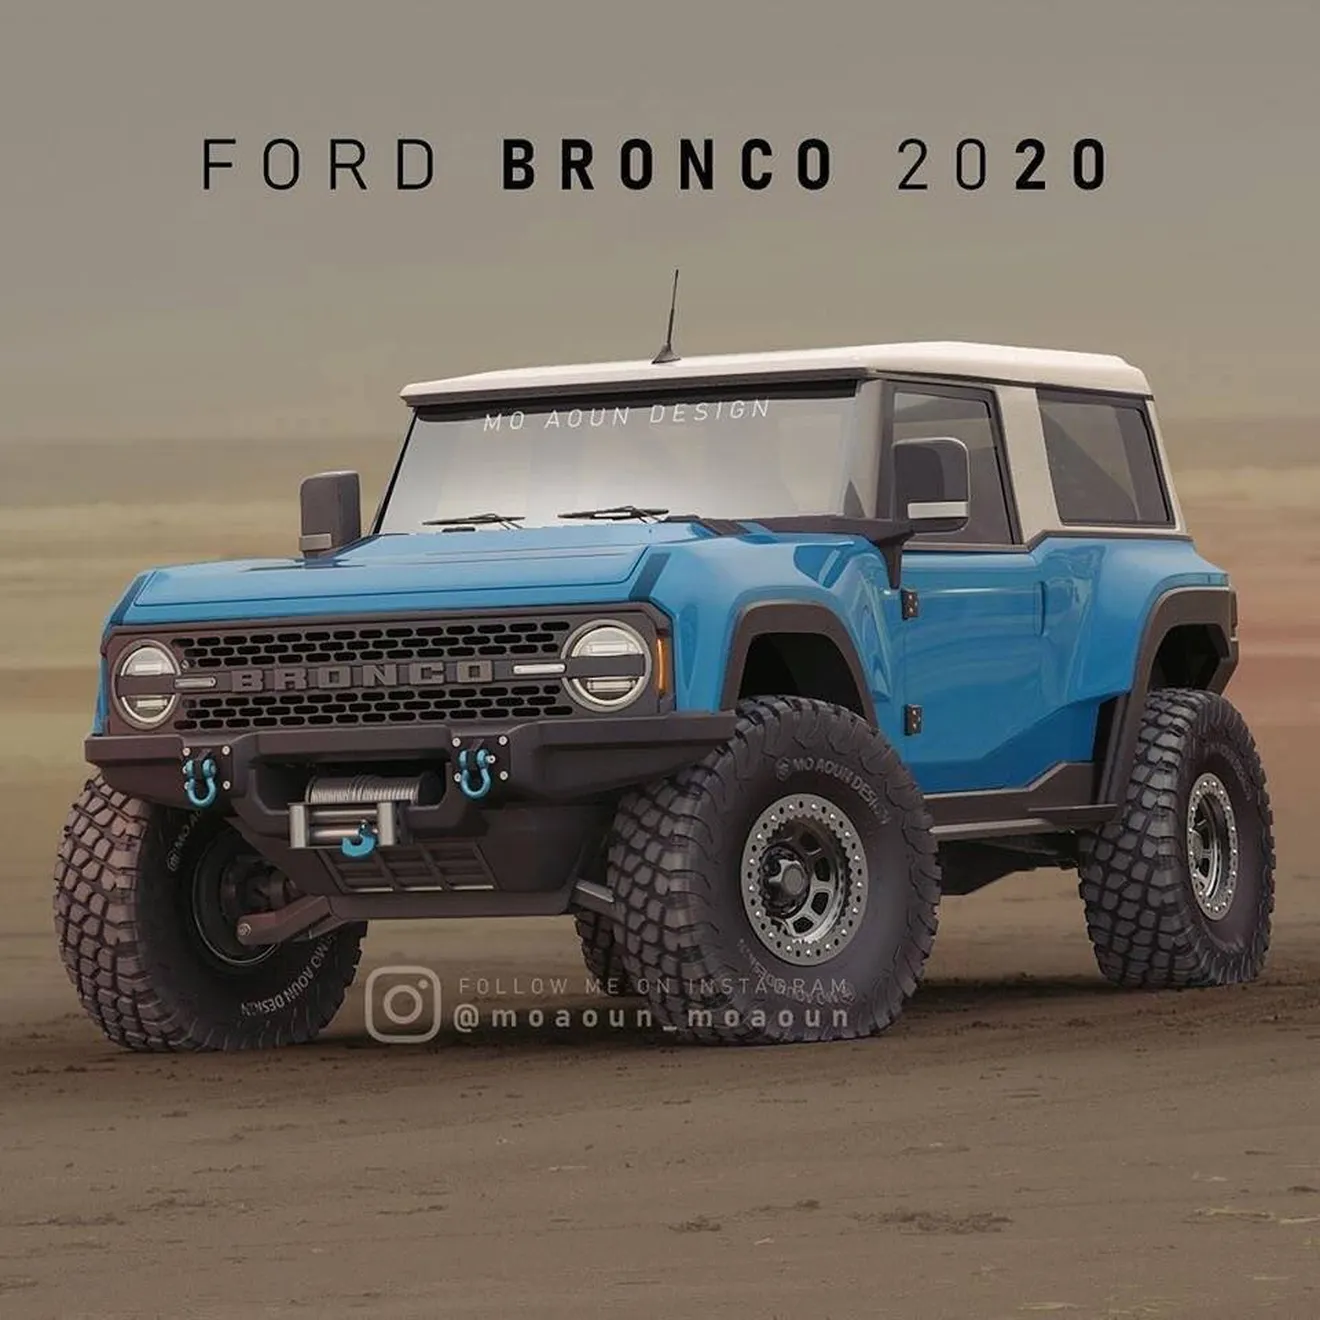 El Ford Bronco será presentado en marzo y su variante crossover en abril